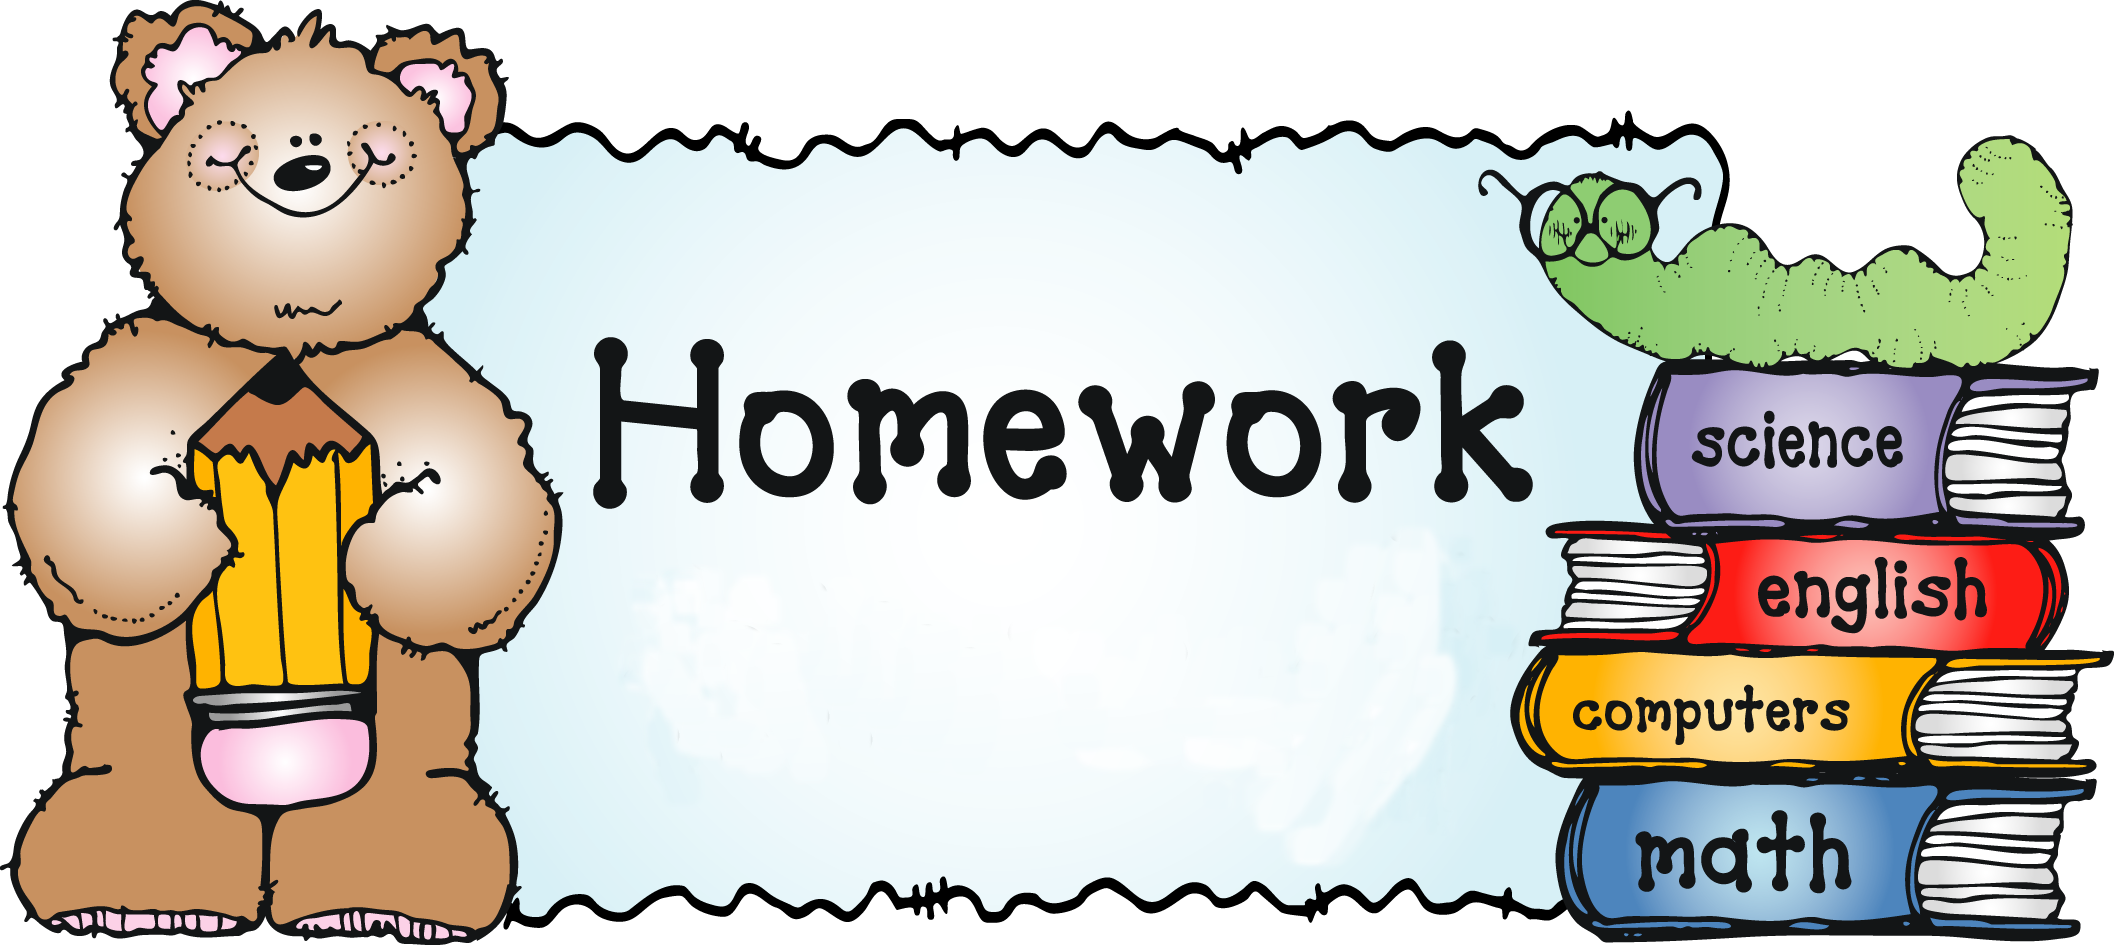 Ничего на английском языке. Homework. Домашнее задание на английском. Homework картинка. Рисунки для презентации по английскому языку.